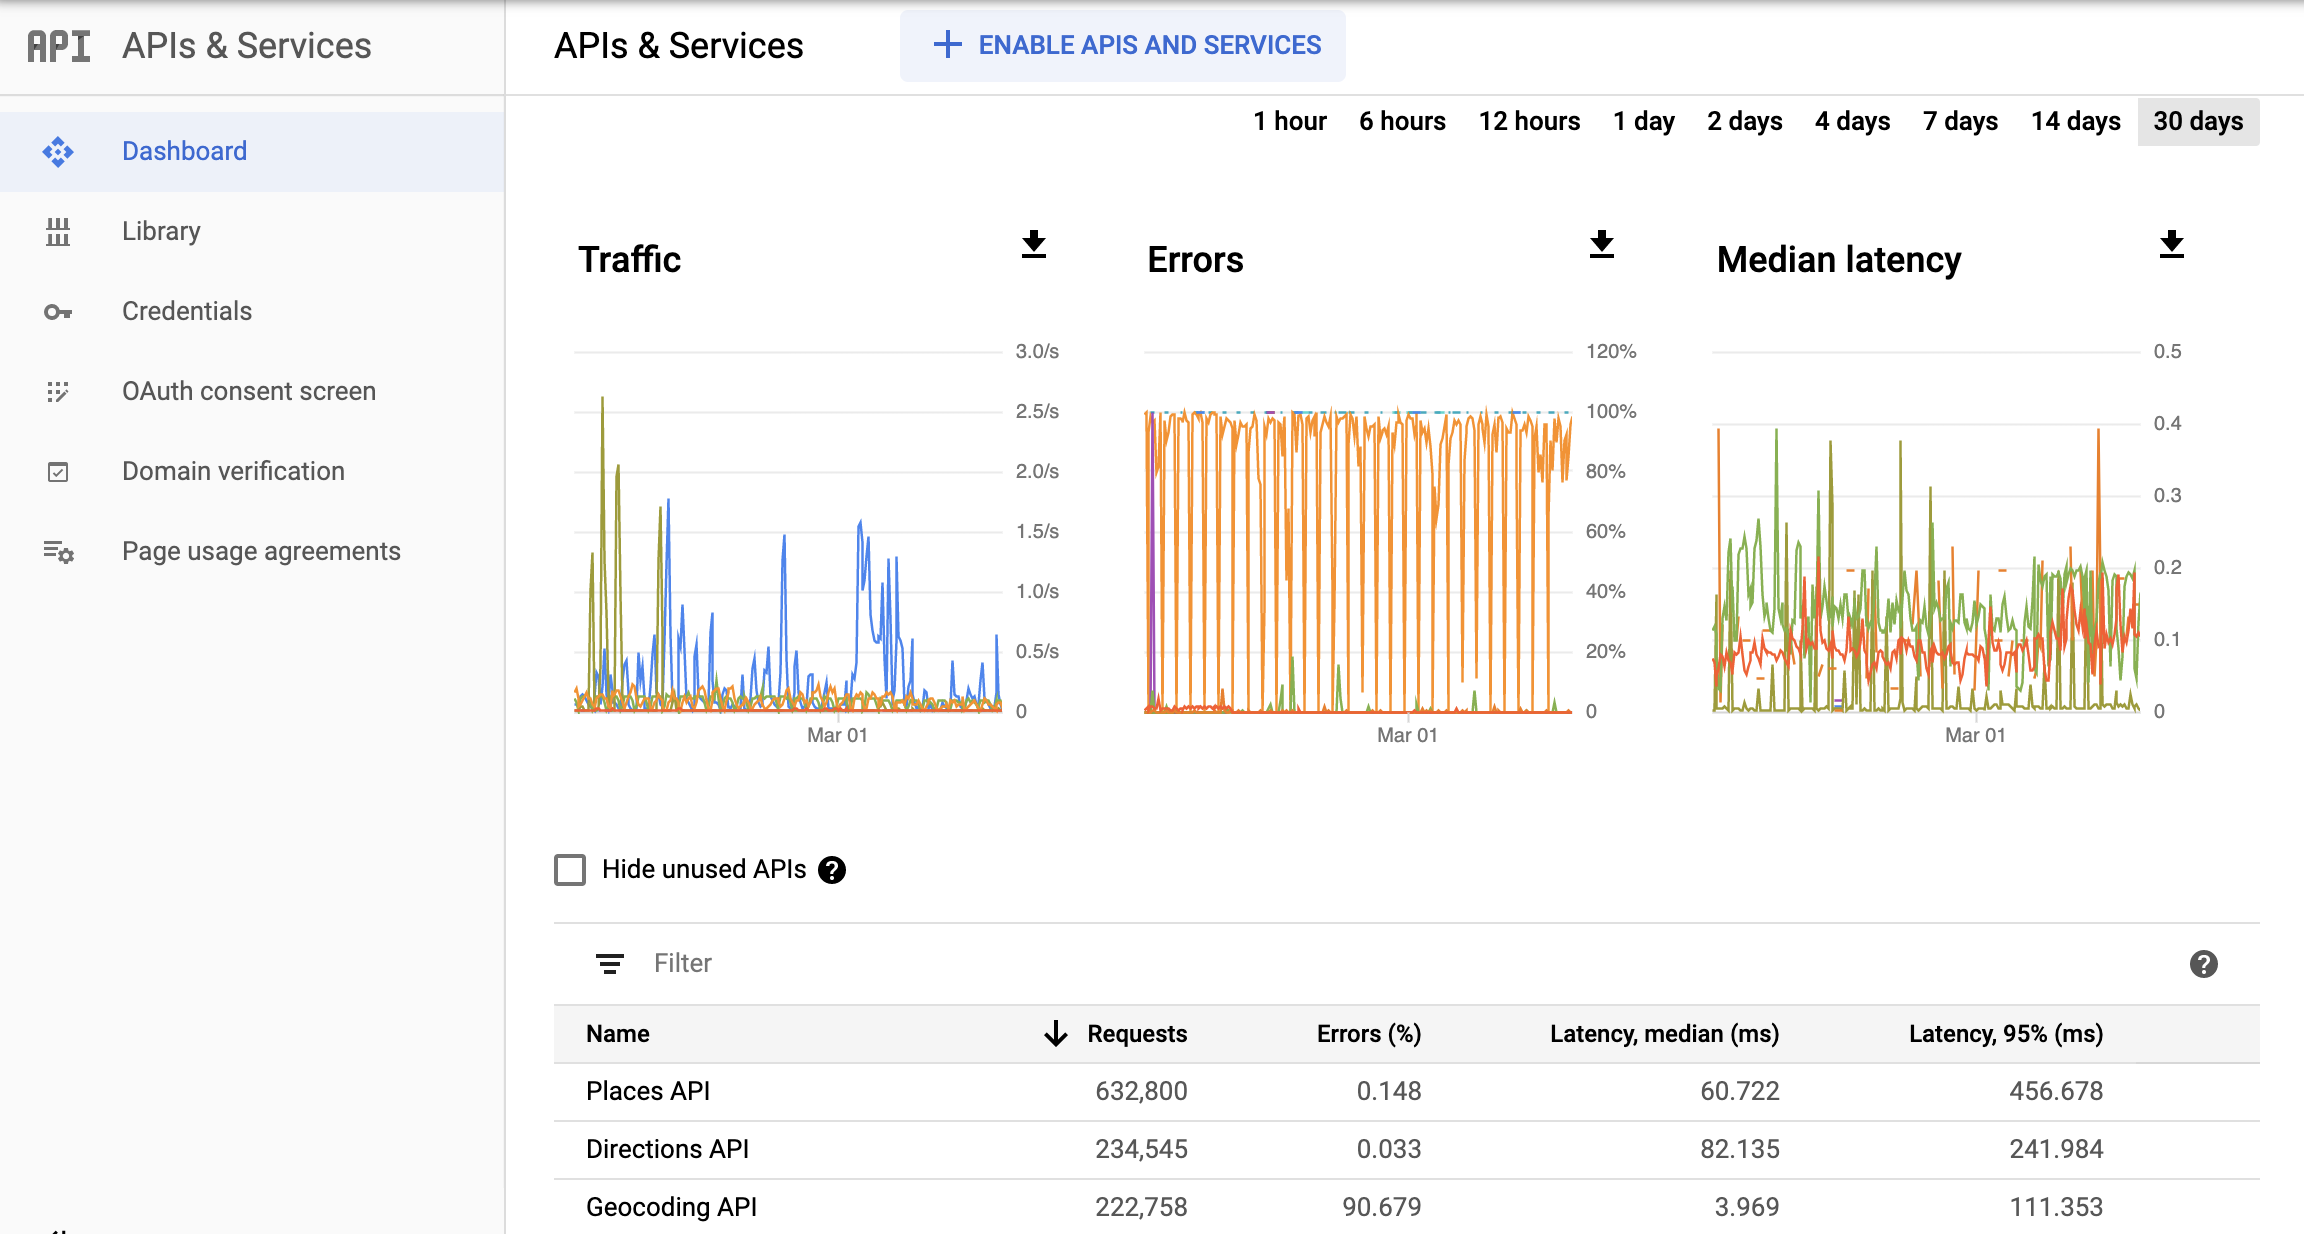 Ảnh chụp màn hình trang API giám sát trong Google Cloud Console, hiển thị trang tổng quan báo cáo API và dịch vụ. Báo cáo này hiển thị các biểu đồ riêng biệt cho Lưu lượng truy cập, Lỗi và Độ trễ trung bình. Các biểu đồ này
  có thể hiển thị dữ liệu trong một giờ cho đến 30 ngày.